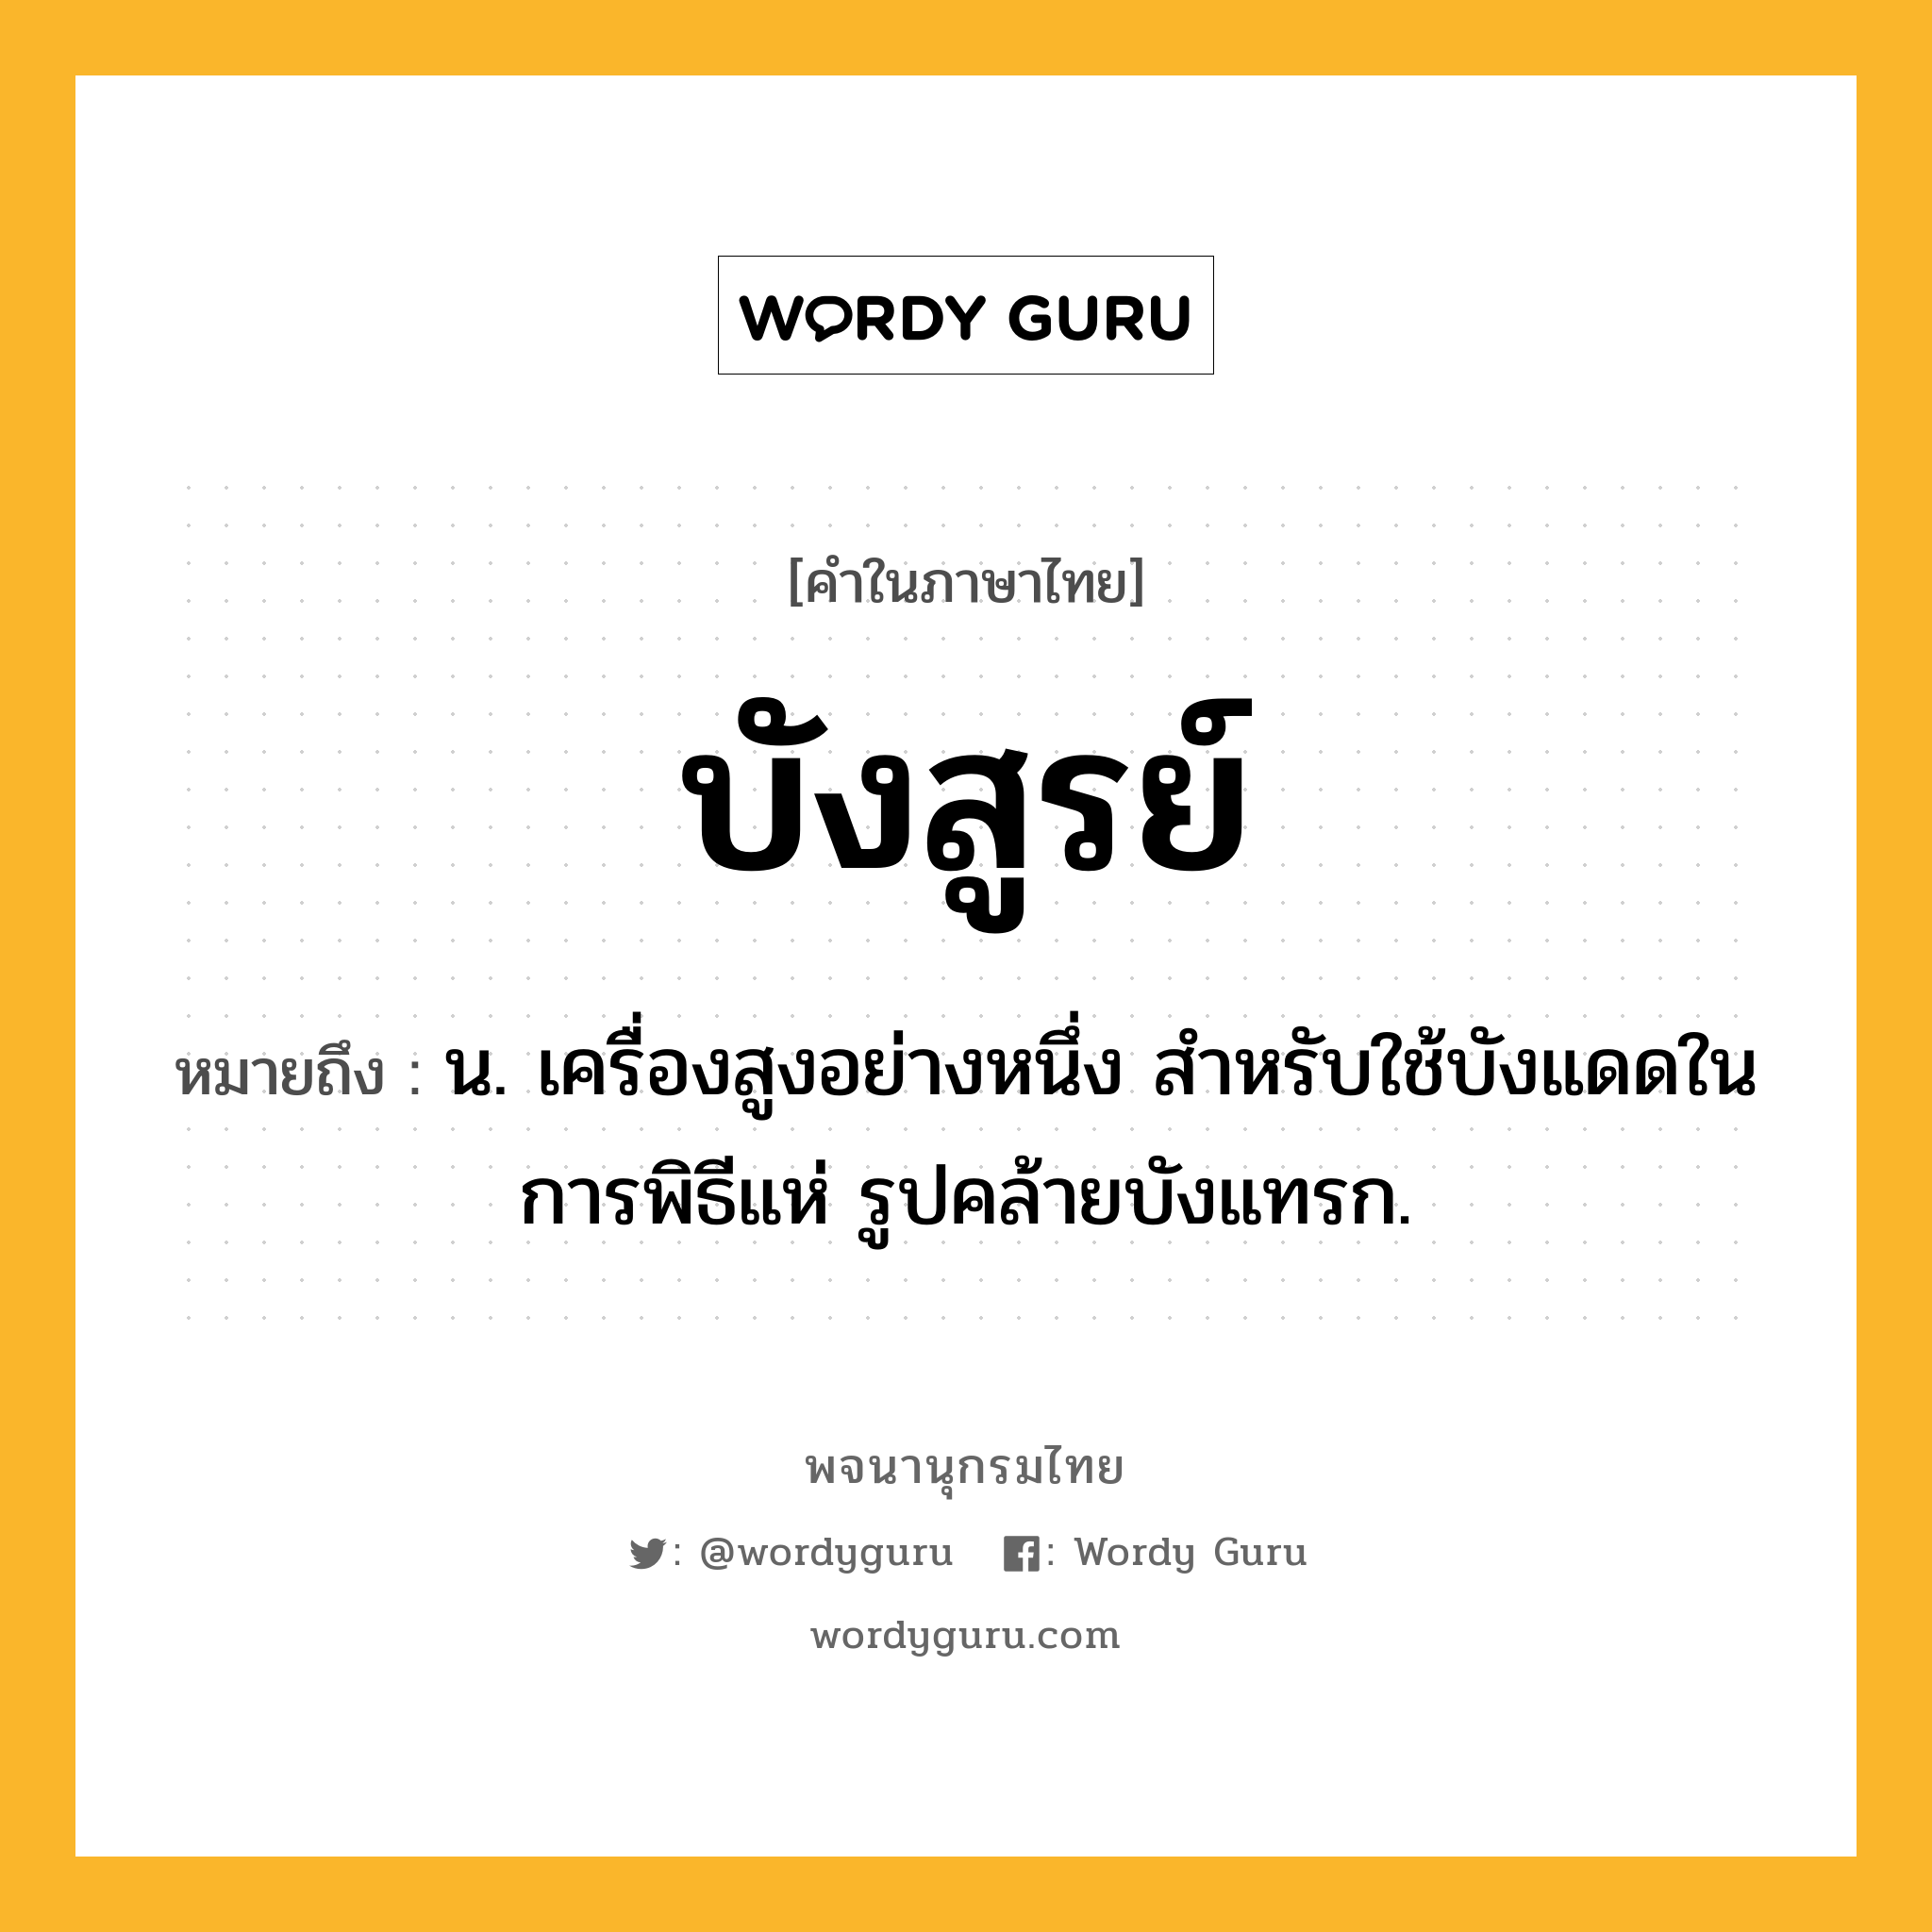 บังสูรย์ ความหมาย หมายถึงอะไร?, คำในภาษาไทย บังสูรย์ หมายถึง น. เครื่องสูงอย่างหนึ่ง สําหรับใช้บังแดดในการพิธีแห่ รูปคล้ายบังแทรก.